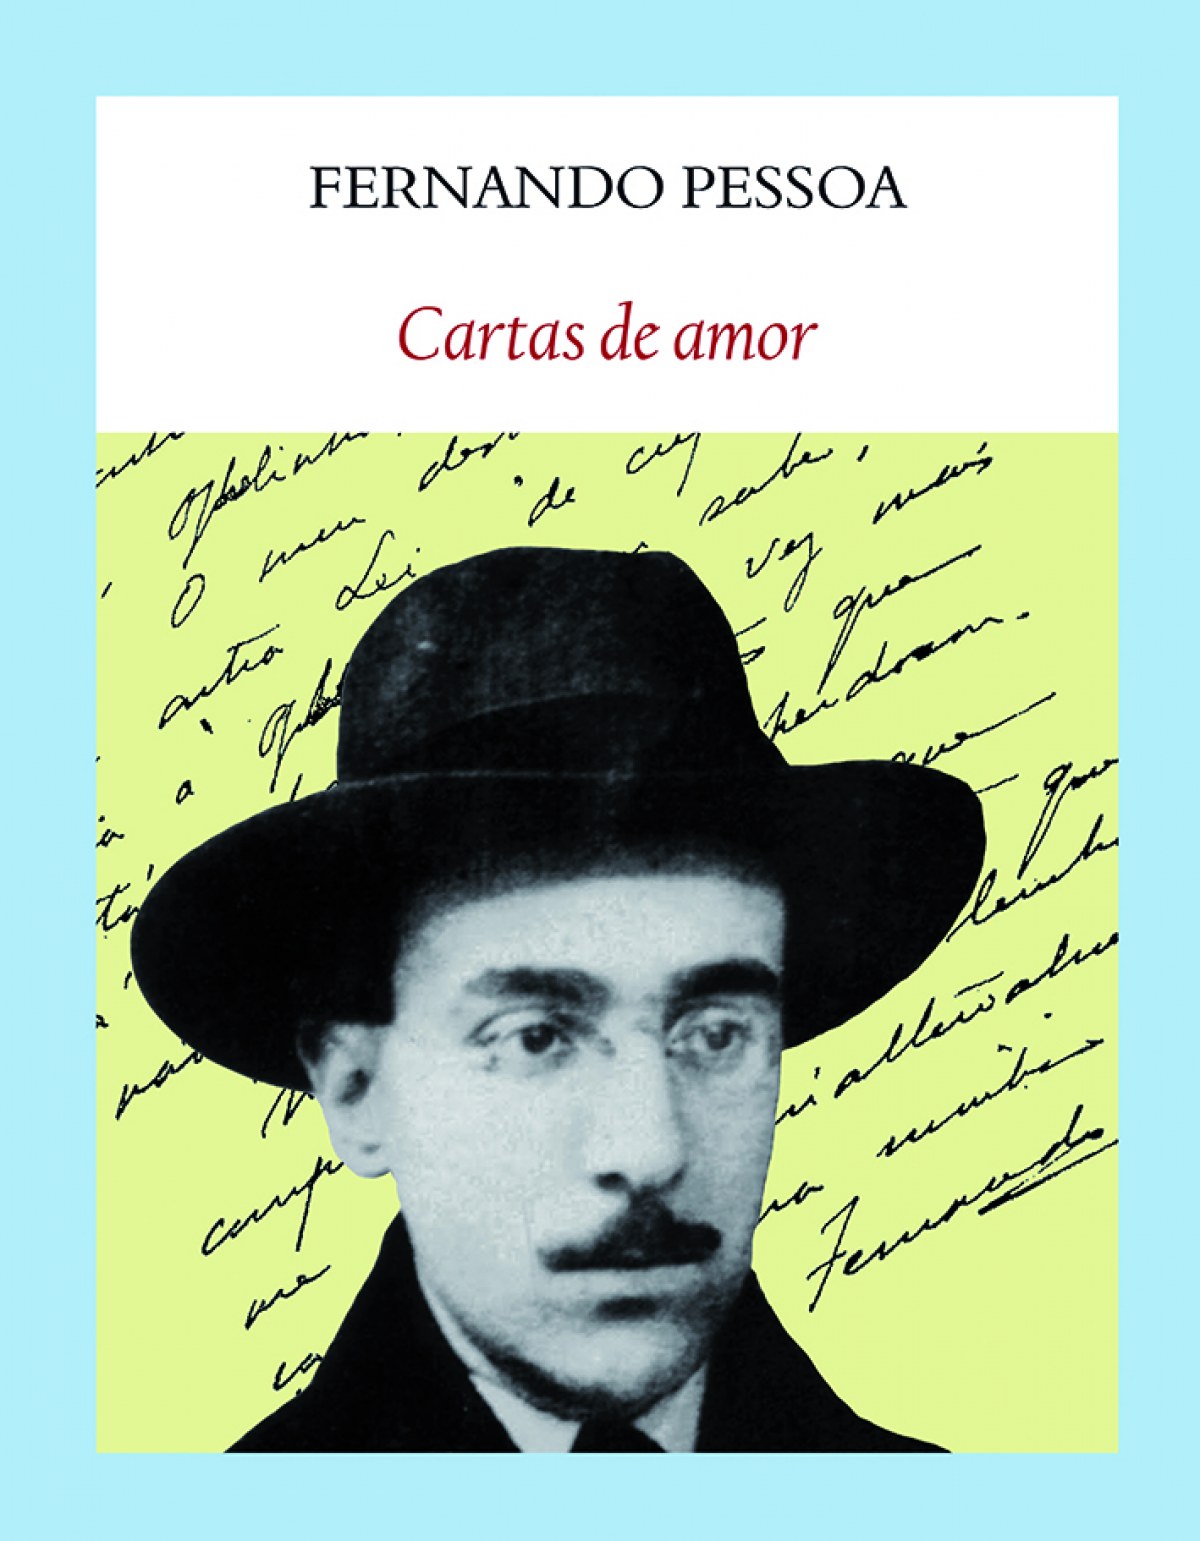 Cartas de amor - Pessoa, Fernando